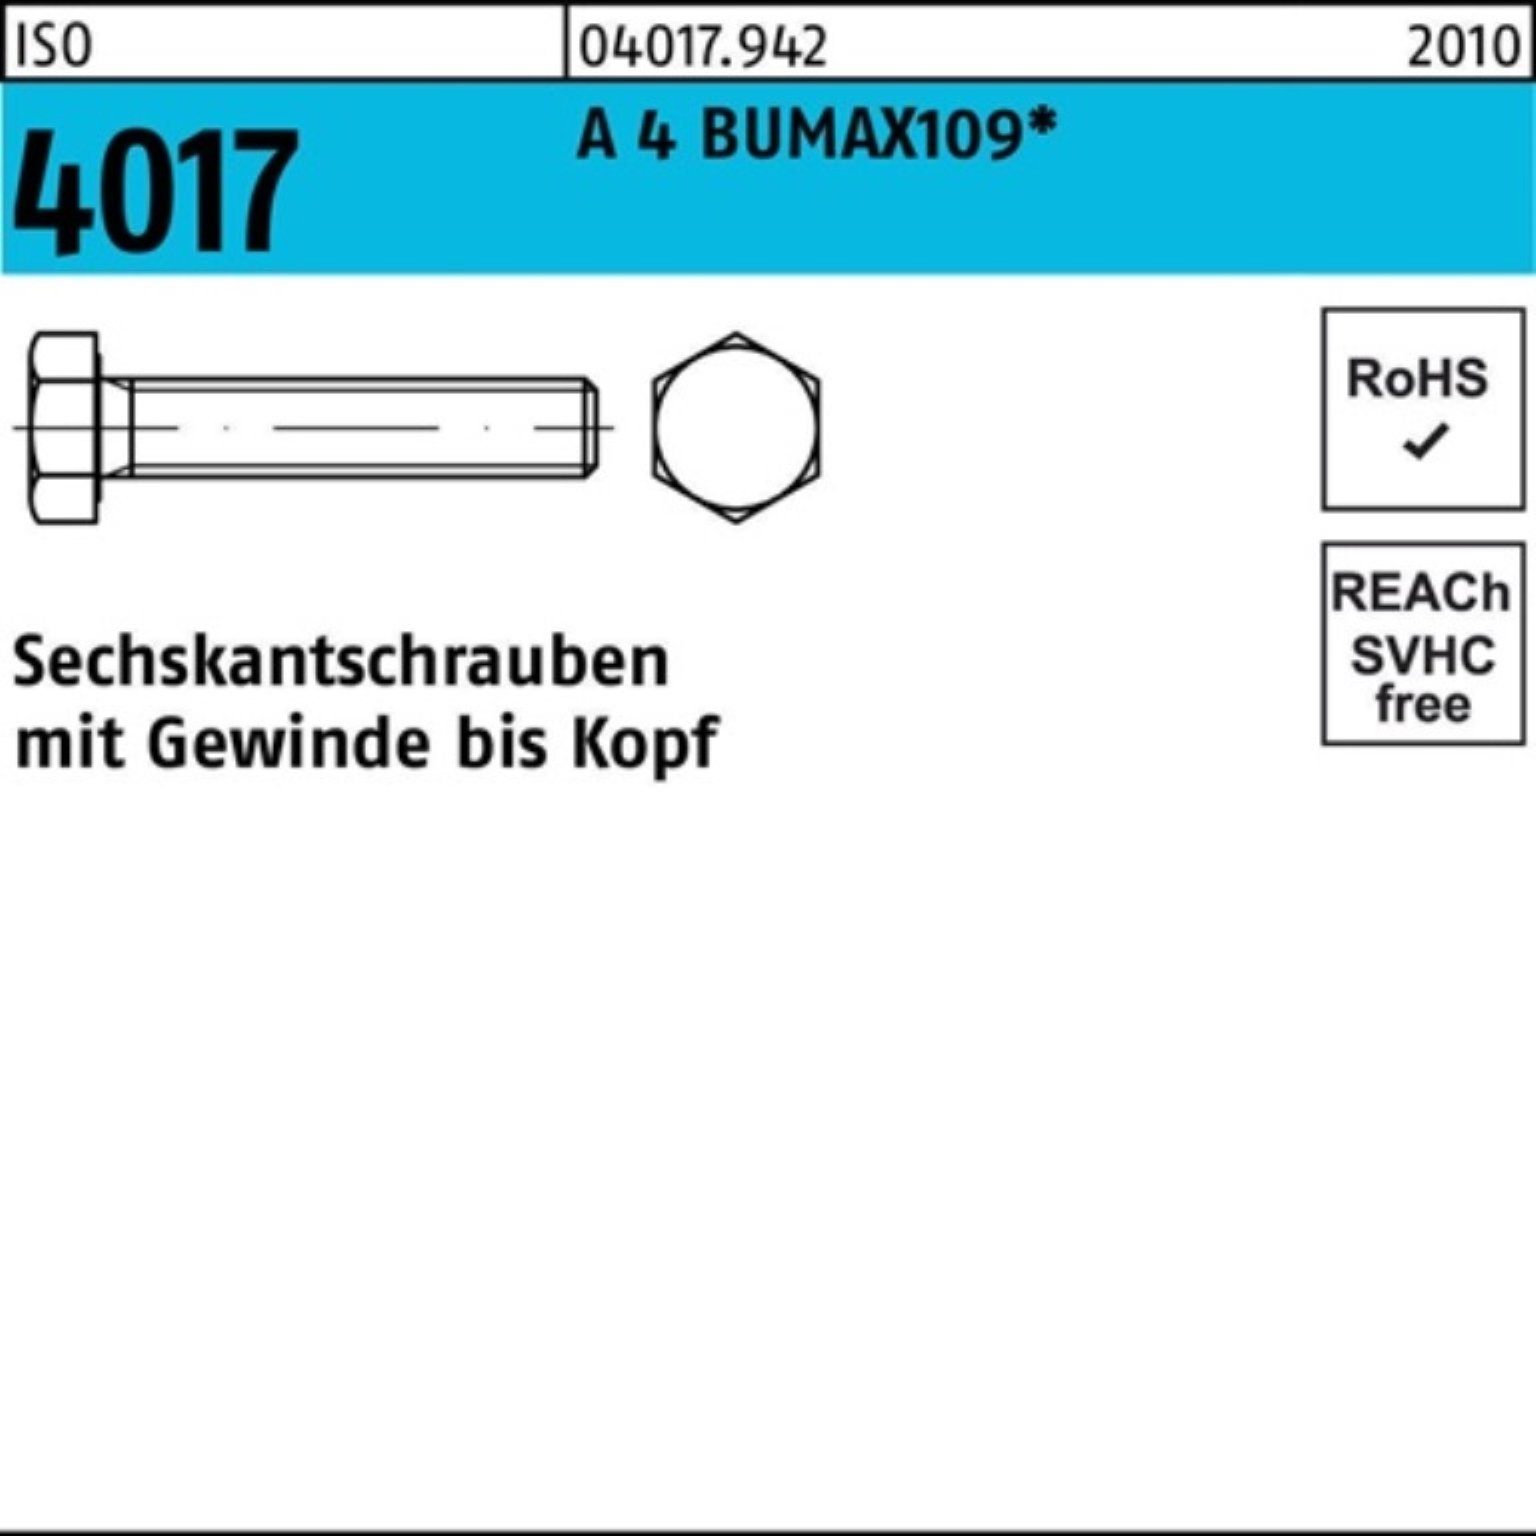 Bufab Sechskantschraube 100er M16x 4017 4 25 Stüc A Sechskantschraube ISO VG 50 Pack BUMAX109